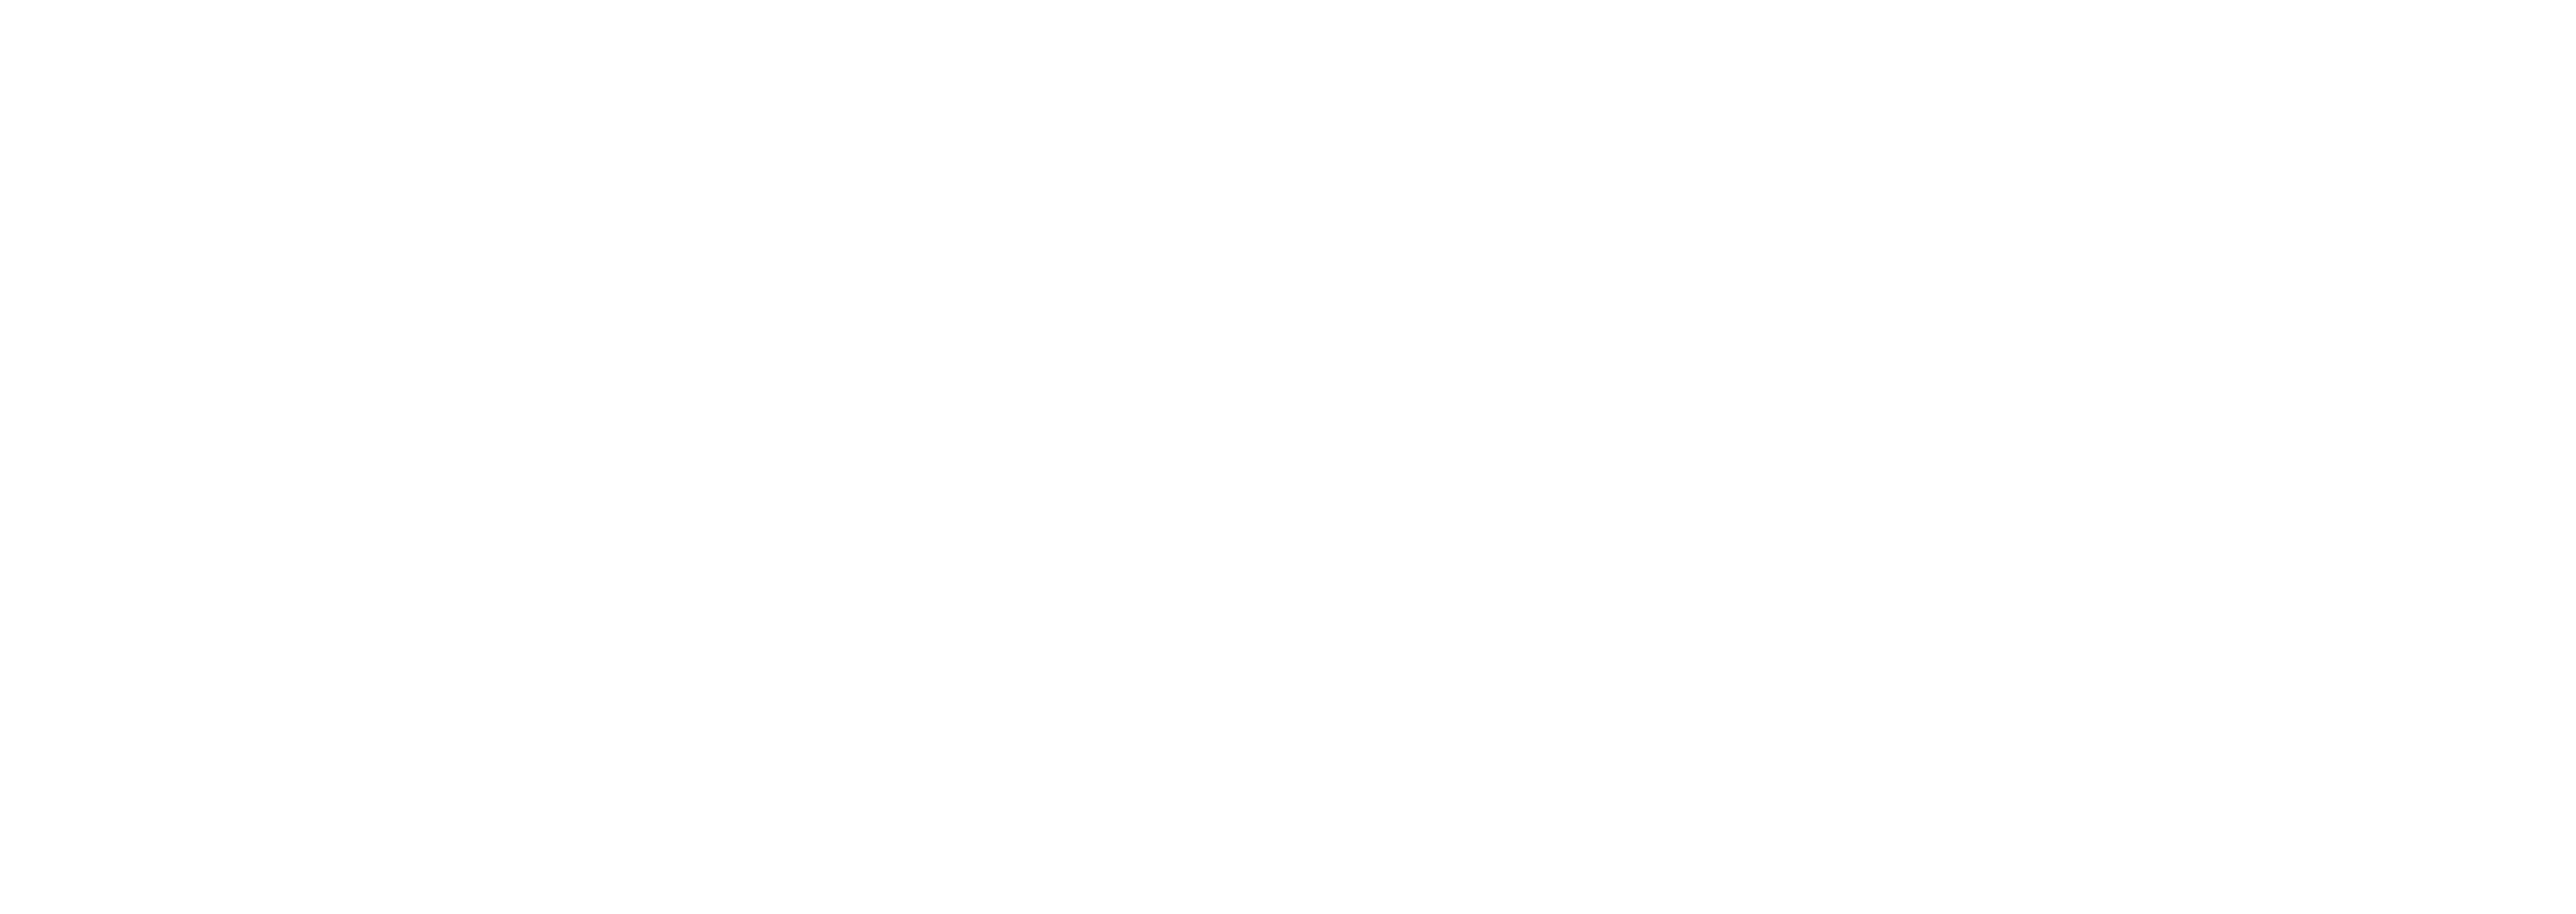 2022 Blackbird Official Selection